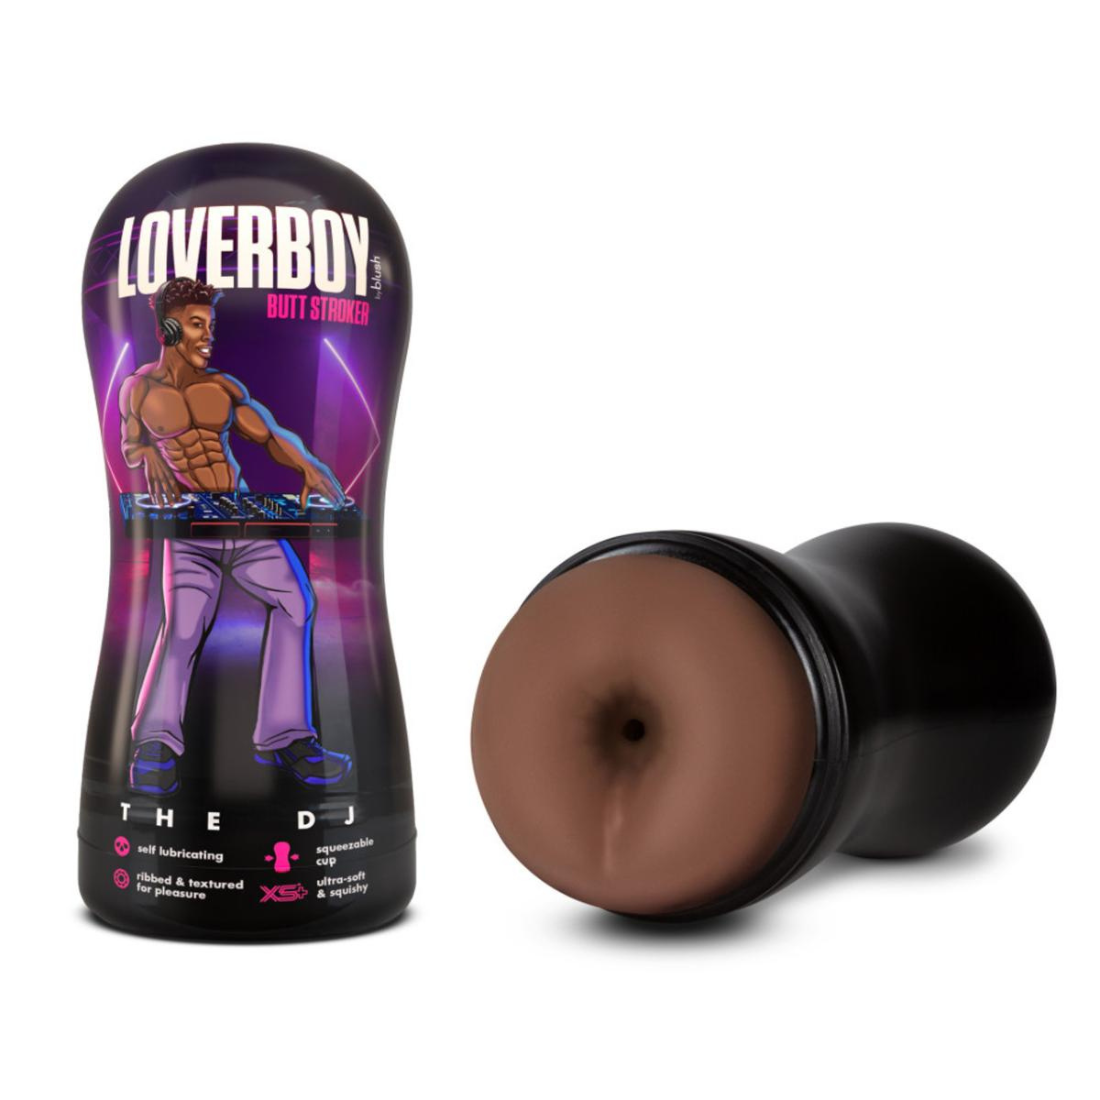 De Loverboy masturbator van Blush heeft een zwarte anus opening. Gemaakt voor gay mannen en te koop bij Flavourez.